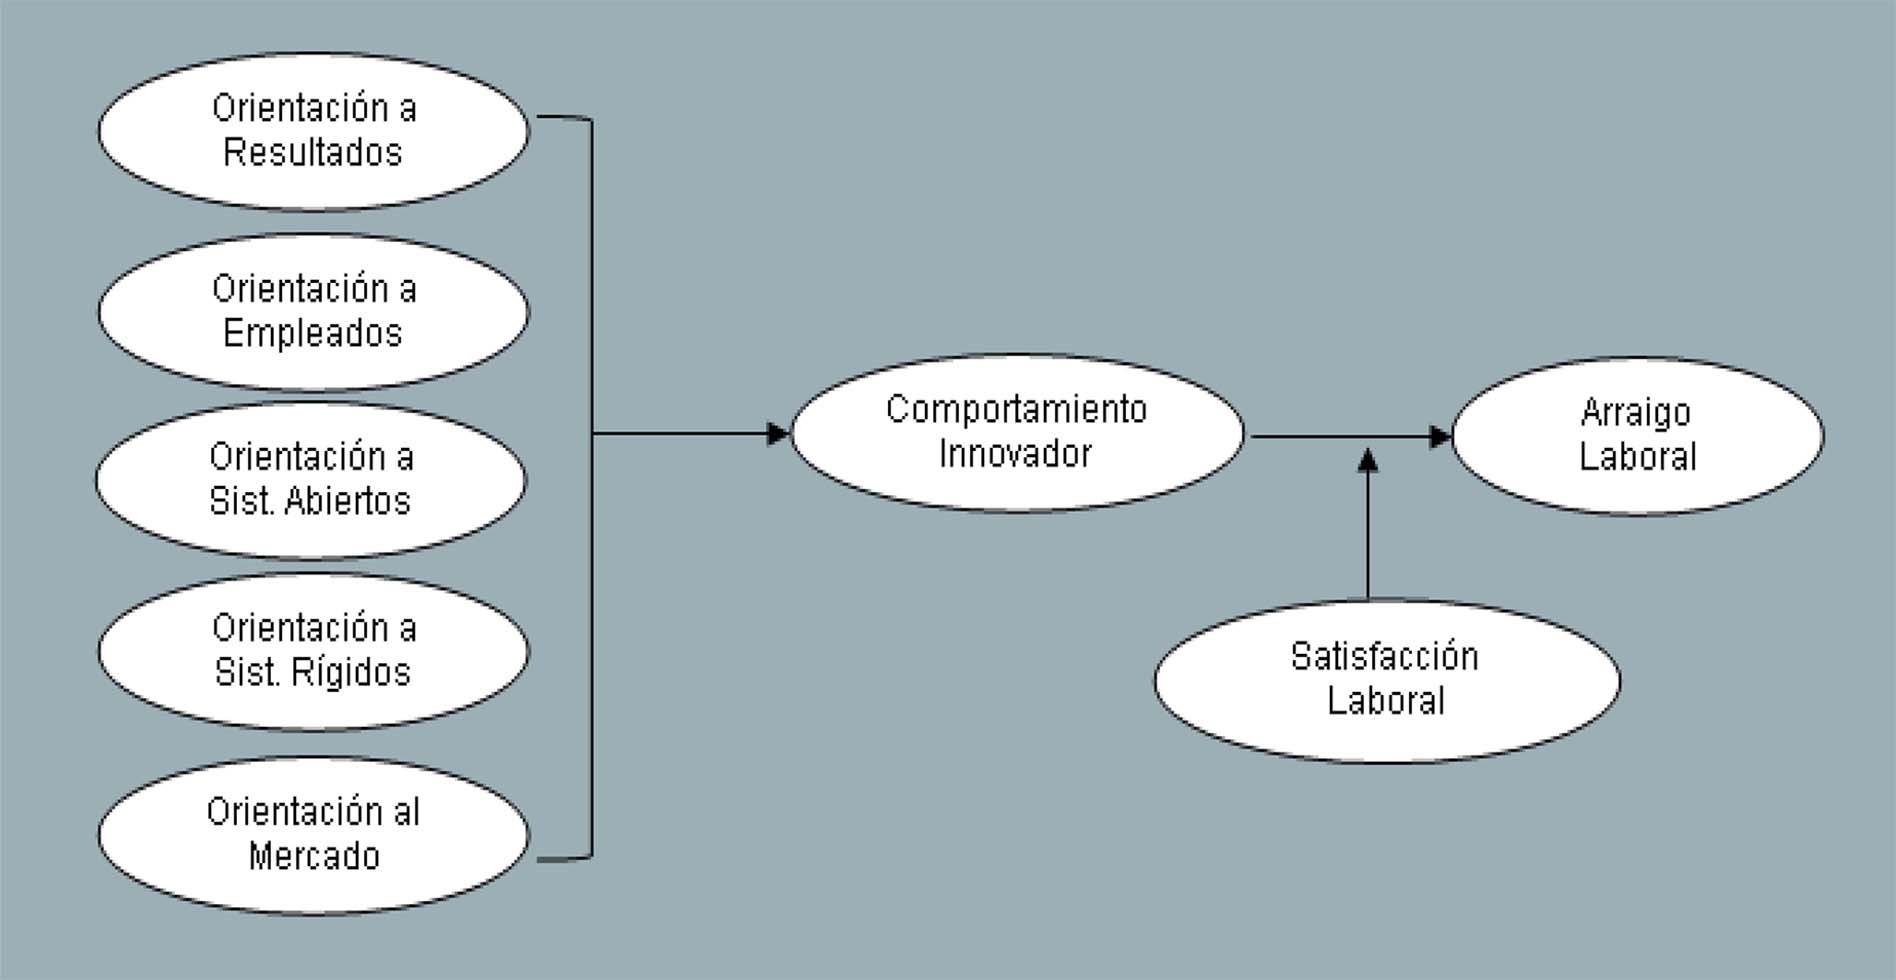 Modelo explicativo del arraigo laboral basado en el interjuego entre prácticas organizacionales, comportamiento innovador y satisfacción laboral